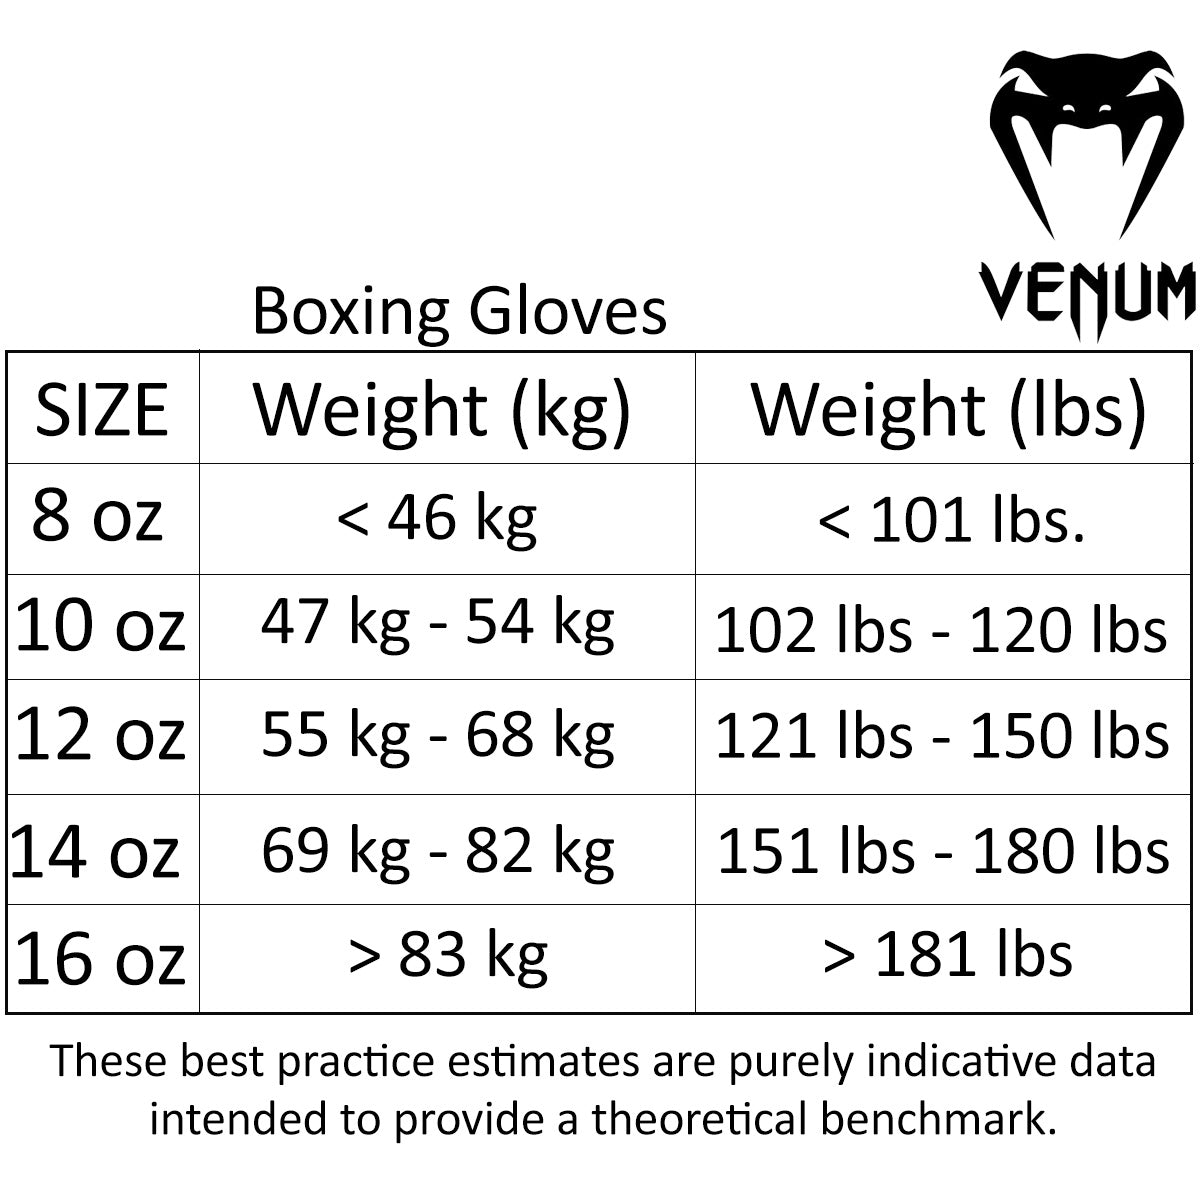 Venum Skull Hook and Loop Boxing Gloves - Black/Black Venum